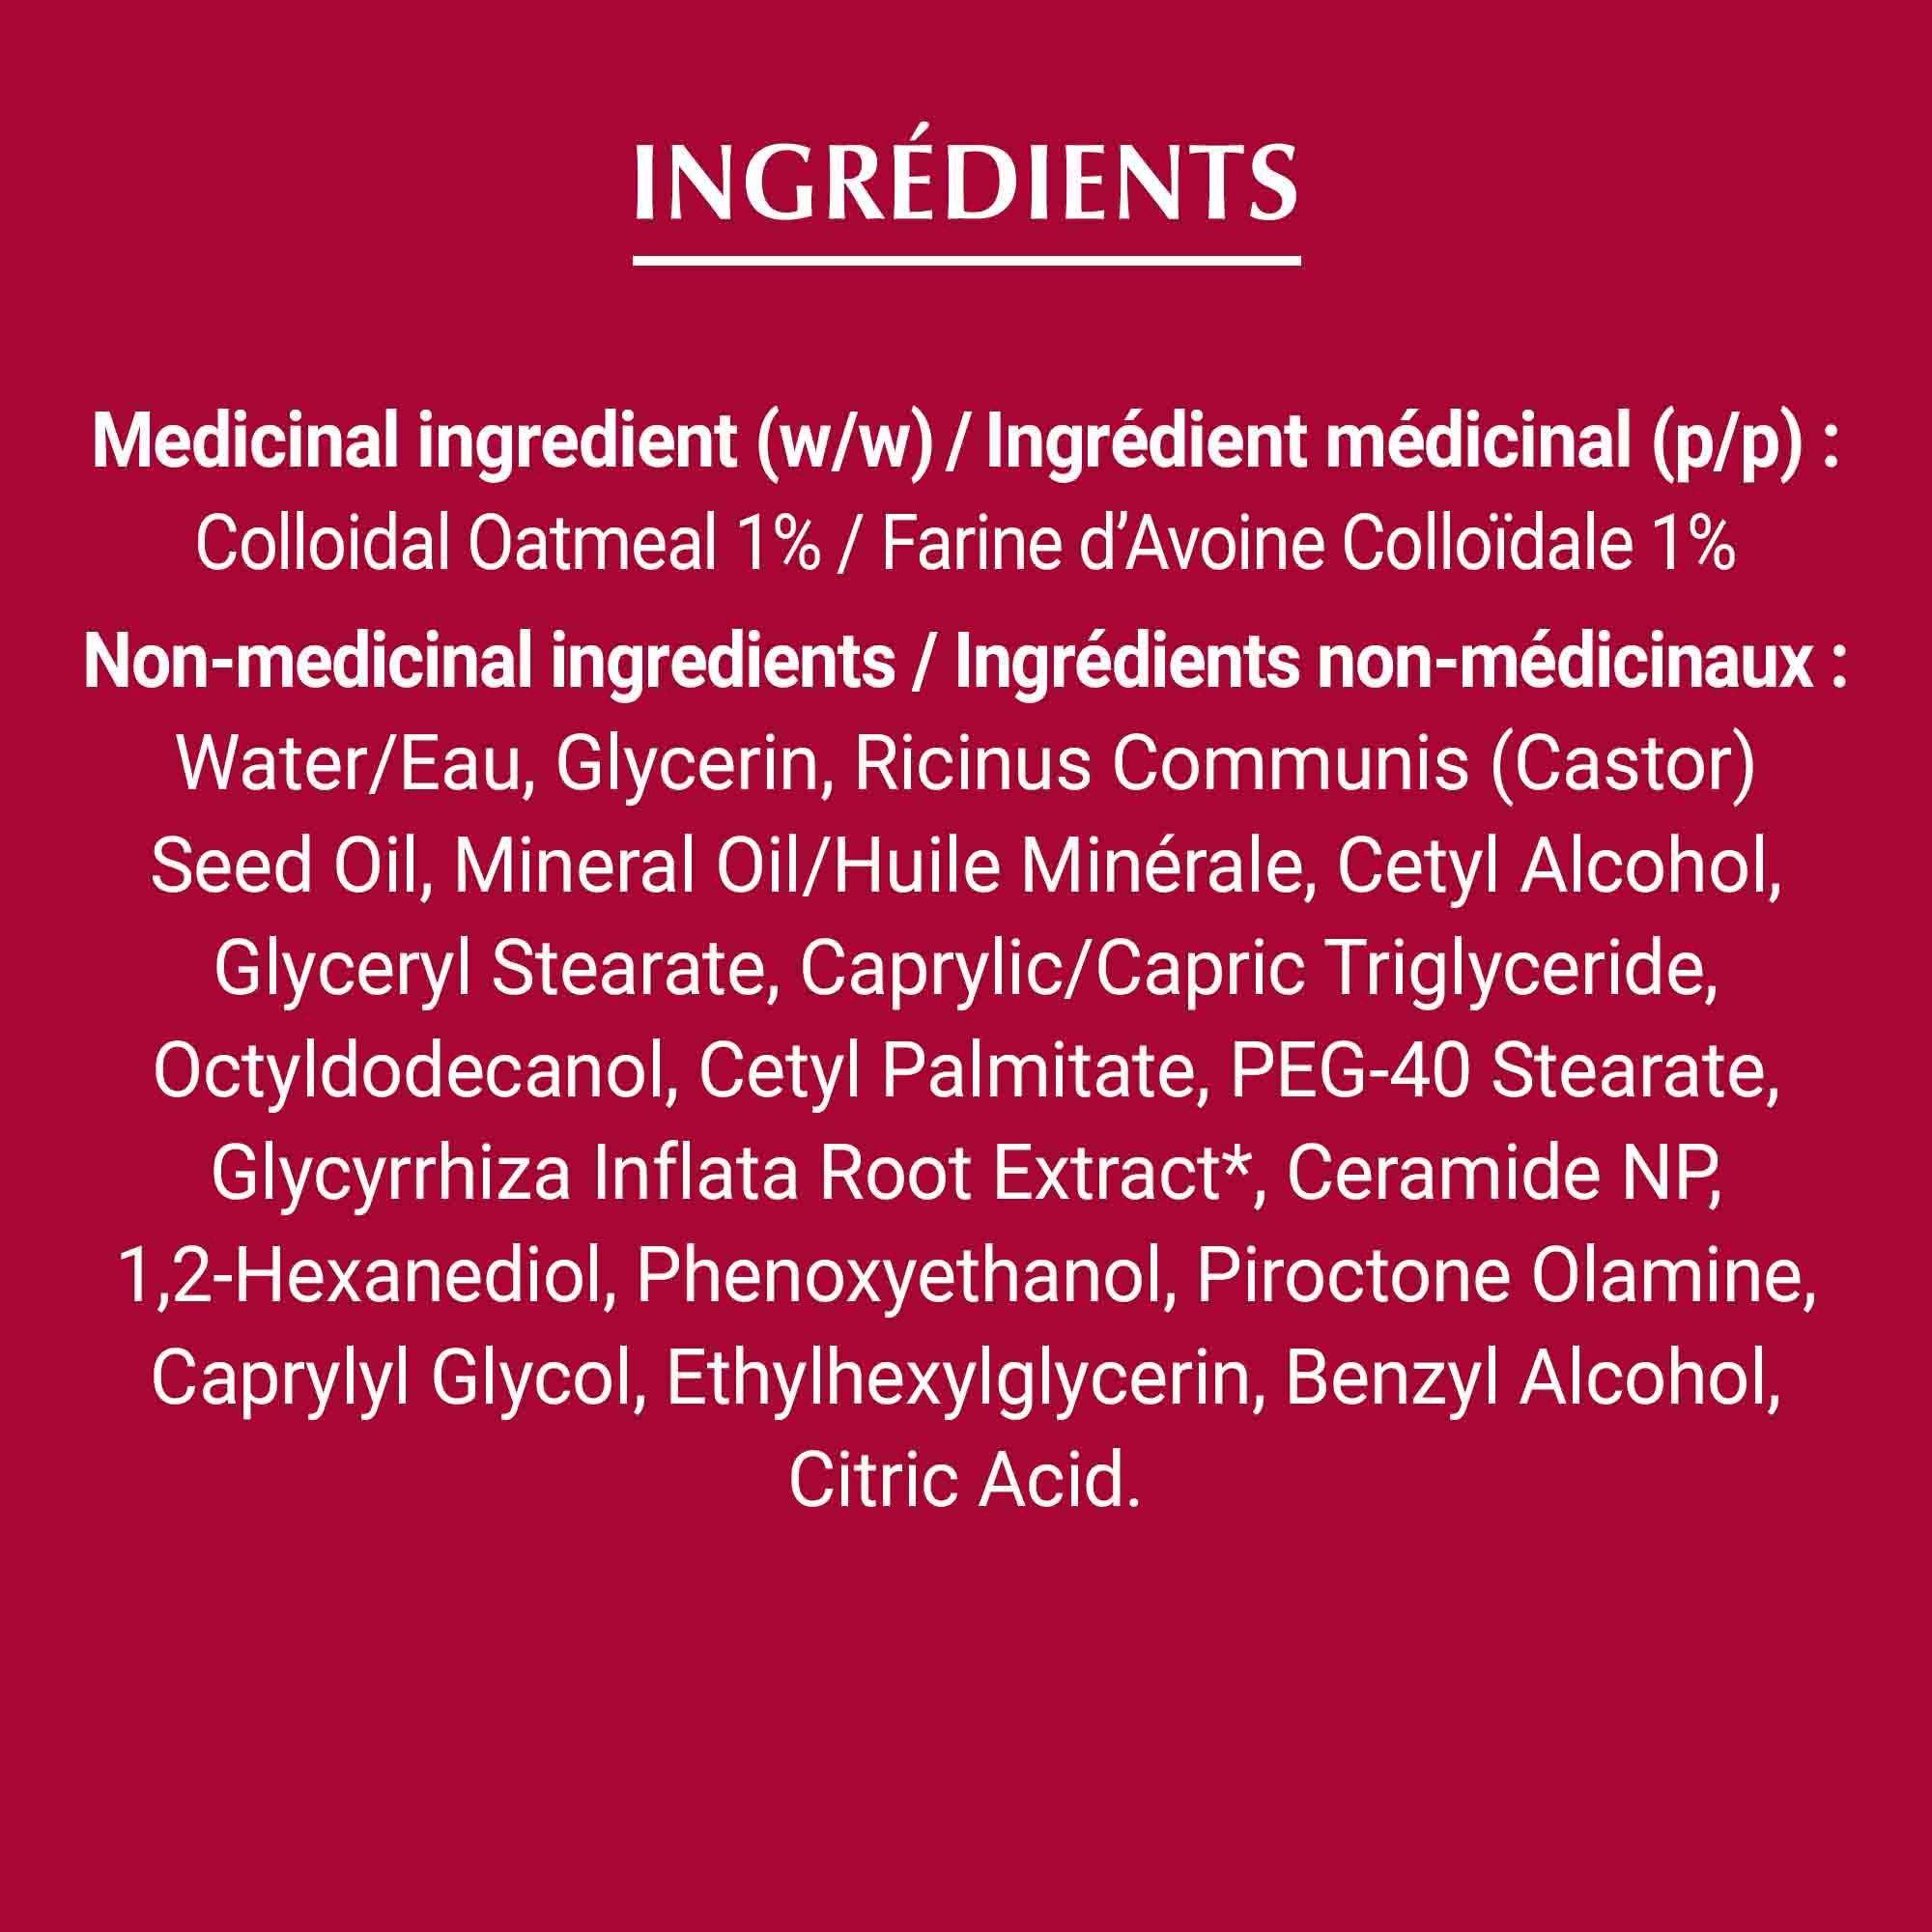 Liste des ingrédients de la crème Eucerin pour peau sujette à l'eczéma, en blanc sur fond rouge.